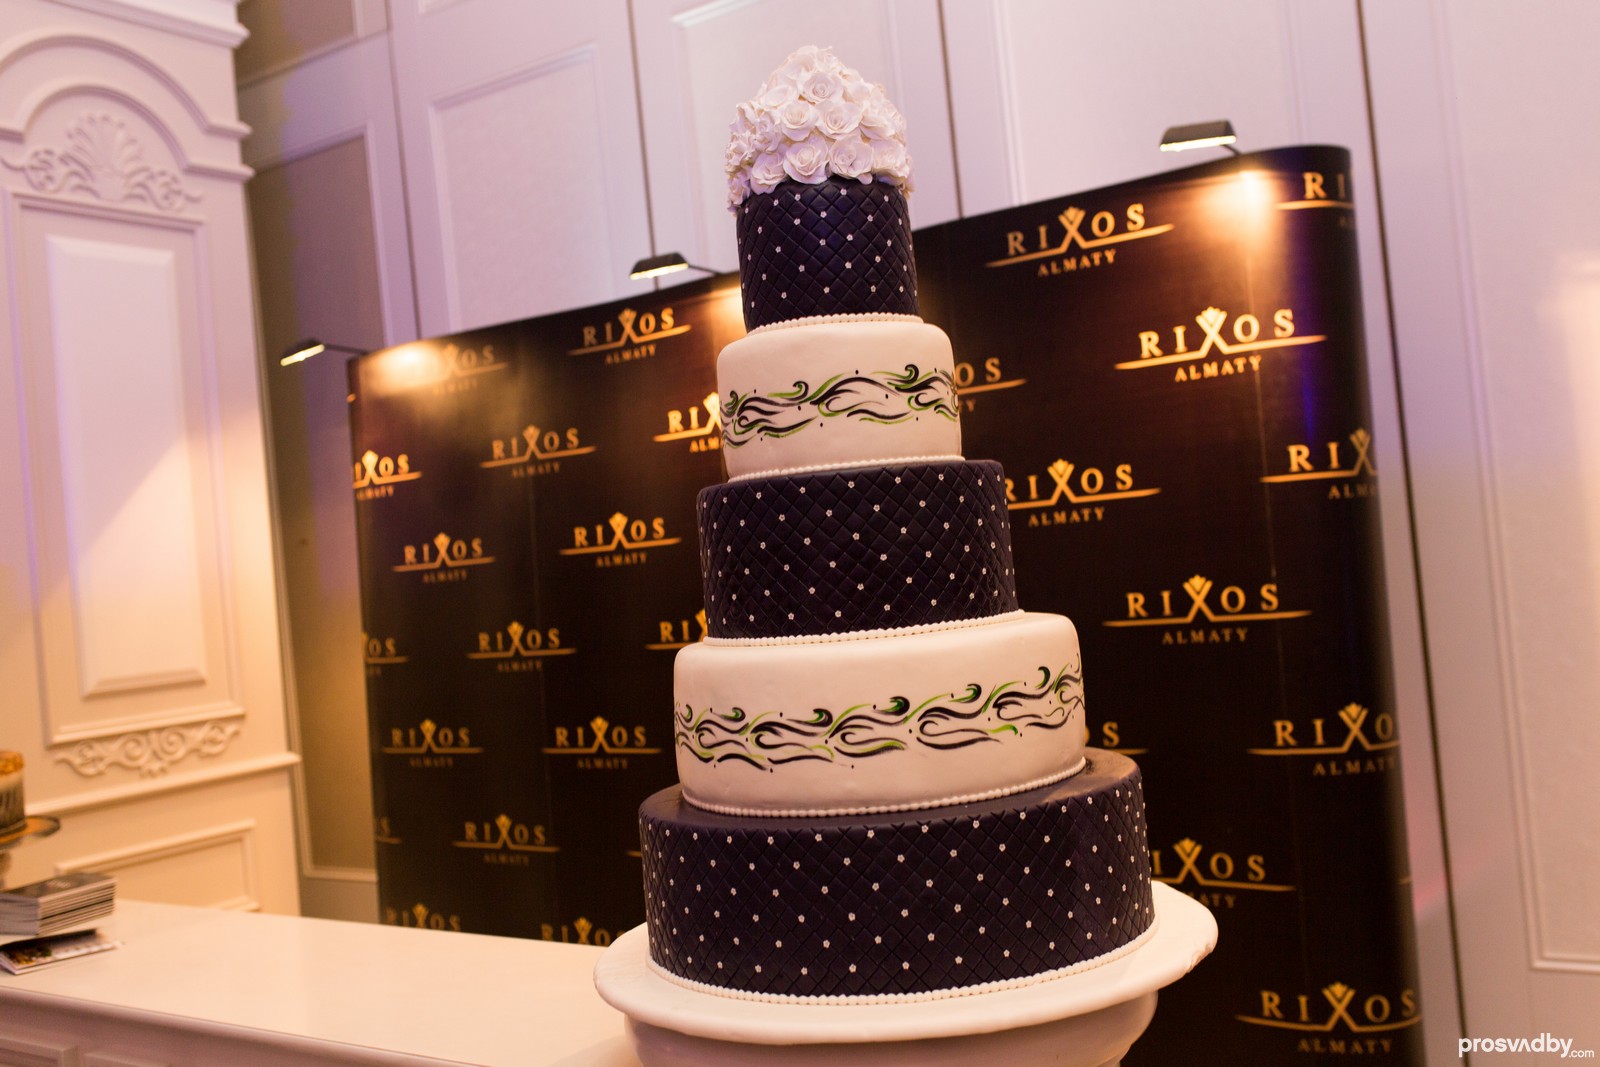 Отель Rixos-Almaty генеральный партнер Свадебная феерия 2018 и победитель в Премии как Лучший отель для проведения роскошных свадеб.